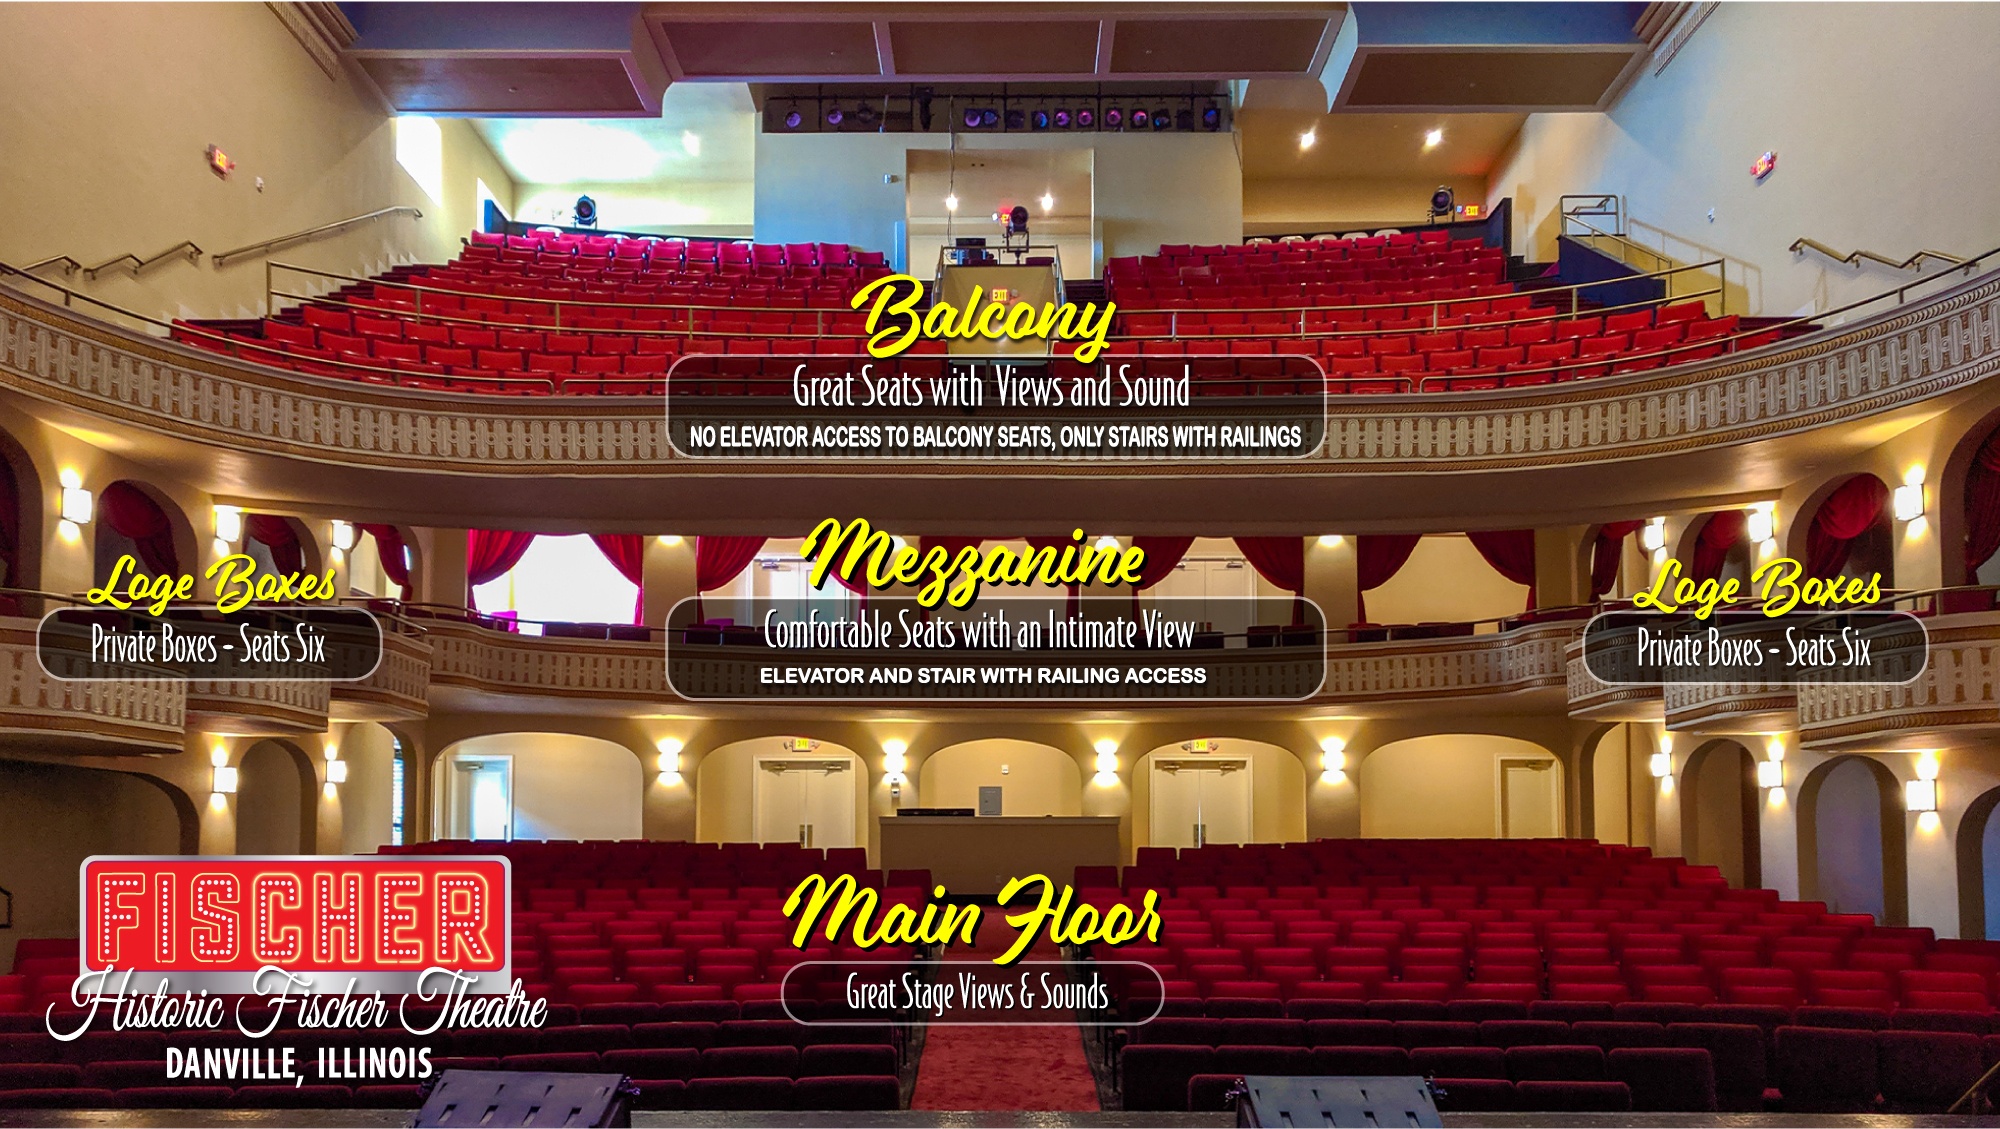 Fischer Theatre Seating Information Graphic